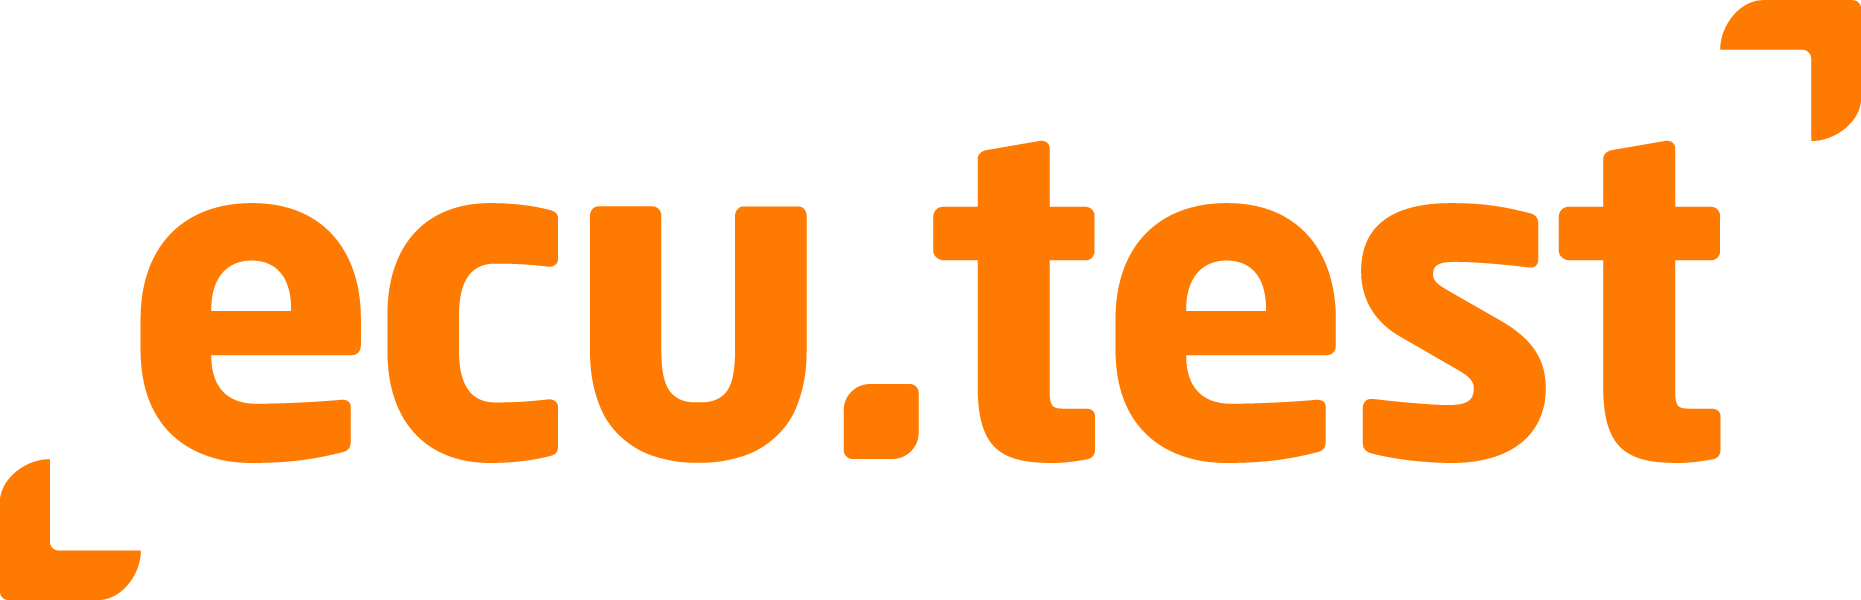 ecu.test Logo